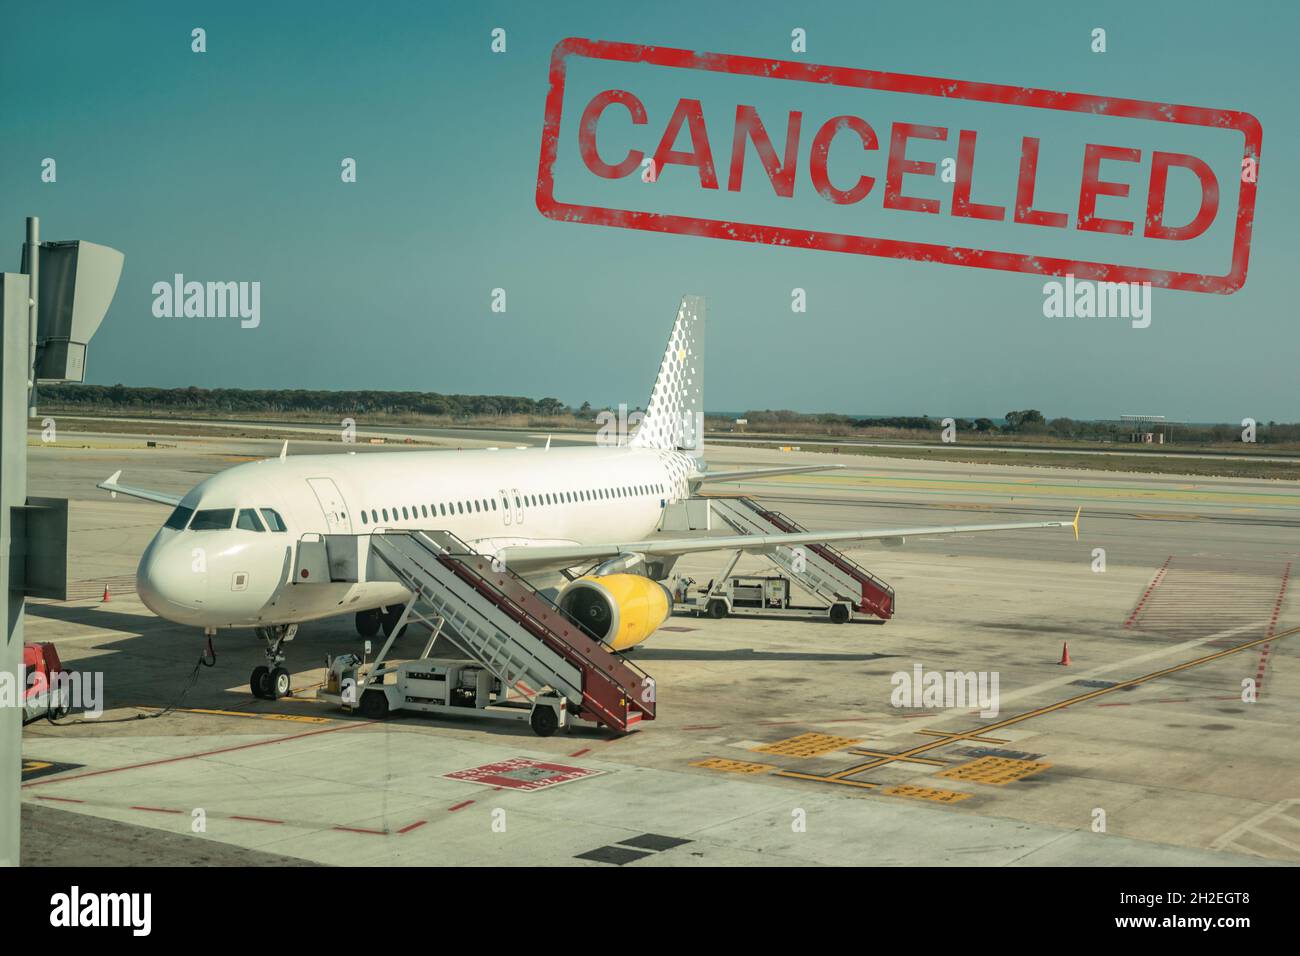 Barcellona, Spagna - 17 marzo 2019: Volo annullato. Molte compagnie aeree annullano i loro voli a causa dell'epidemia di coronavirus. Virus epidemico 2 Foto Stock